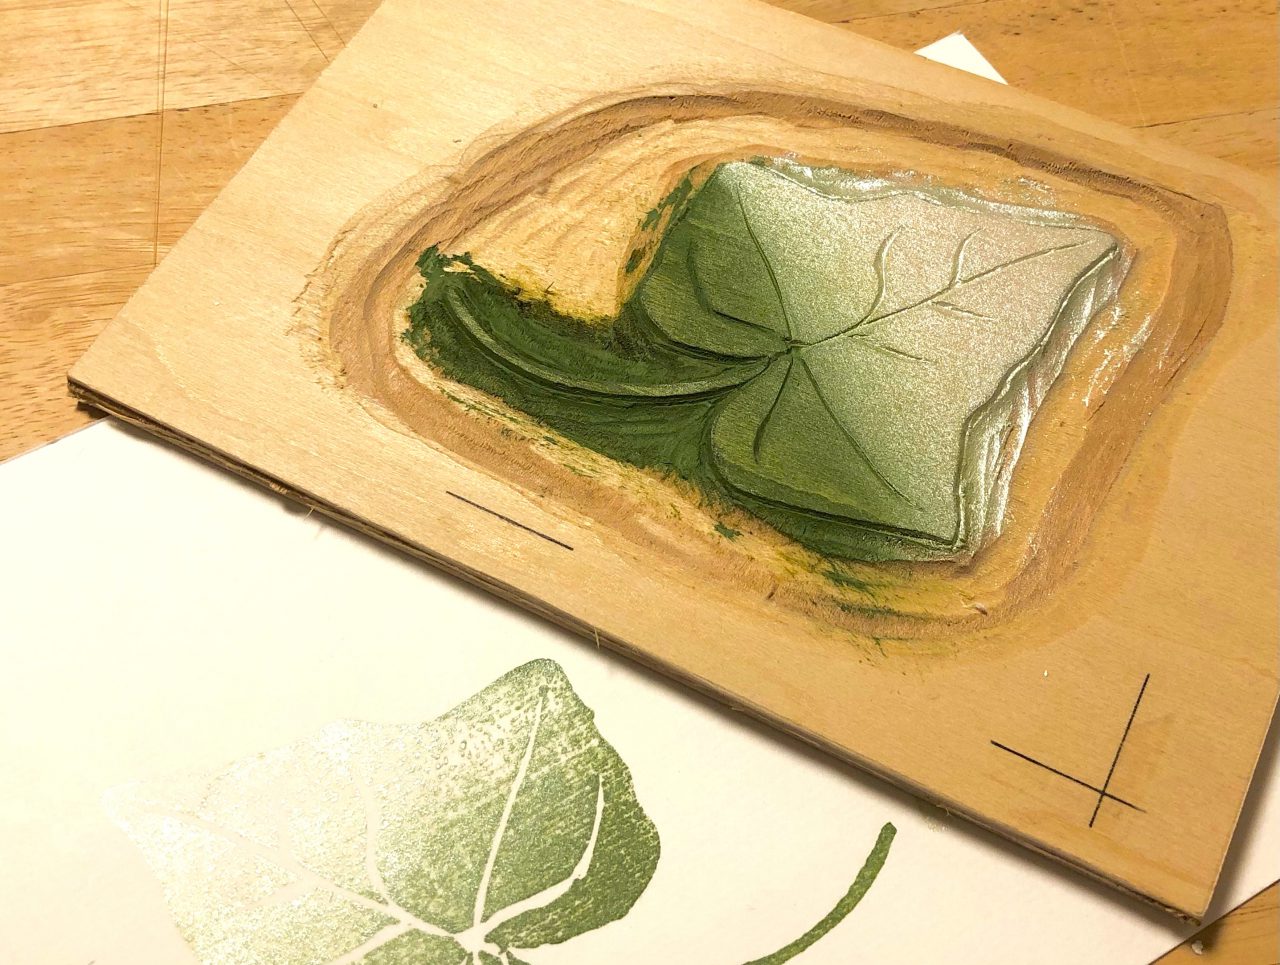 木版画を楽しむ〜創作への第一歩〜 みんなでつくるスタジオ 千葉市美術館